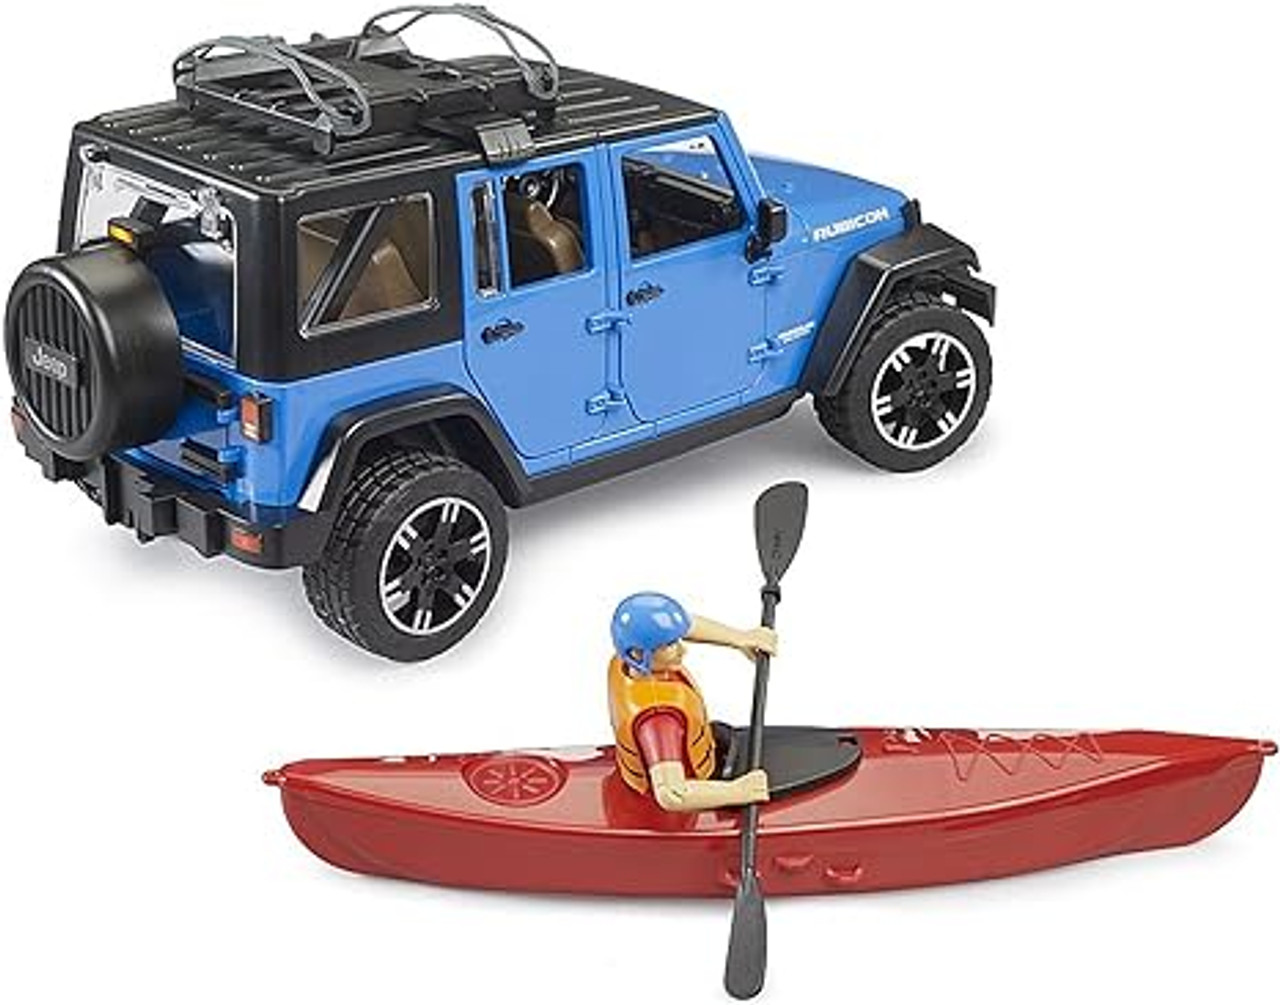 Jeep Wrangler Rubicon W/ Kayak And Figure